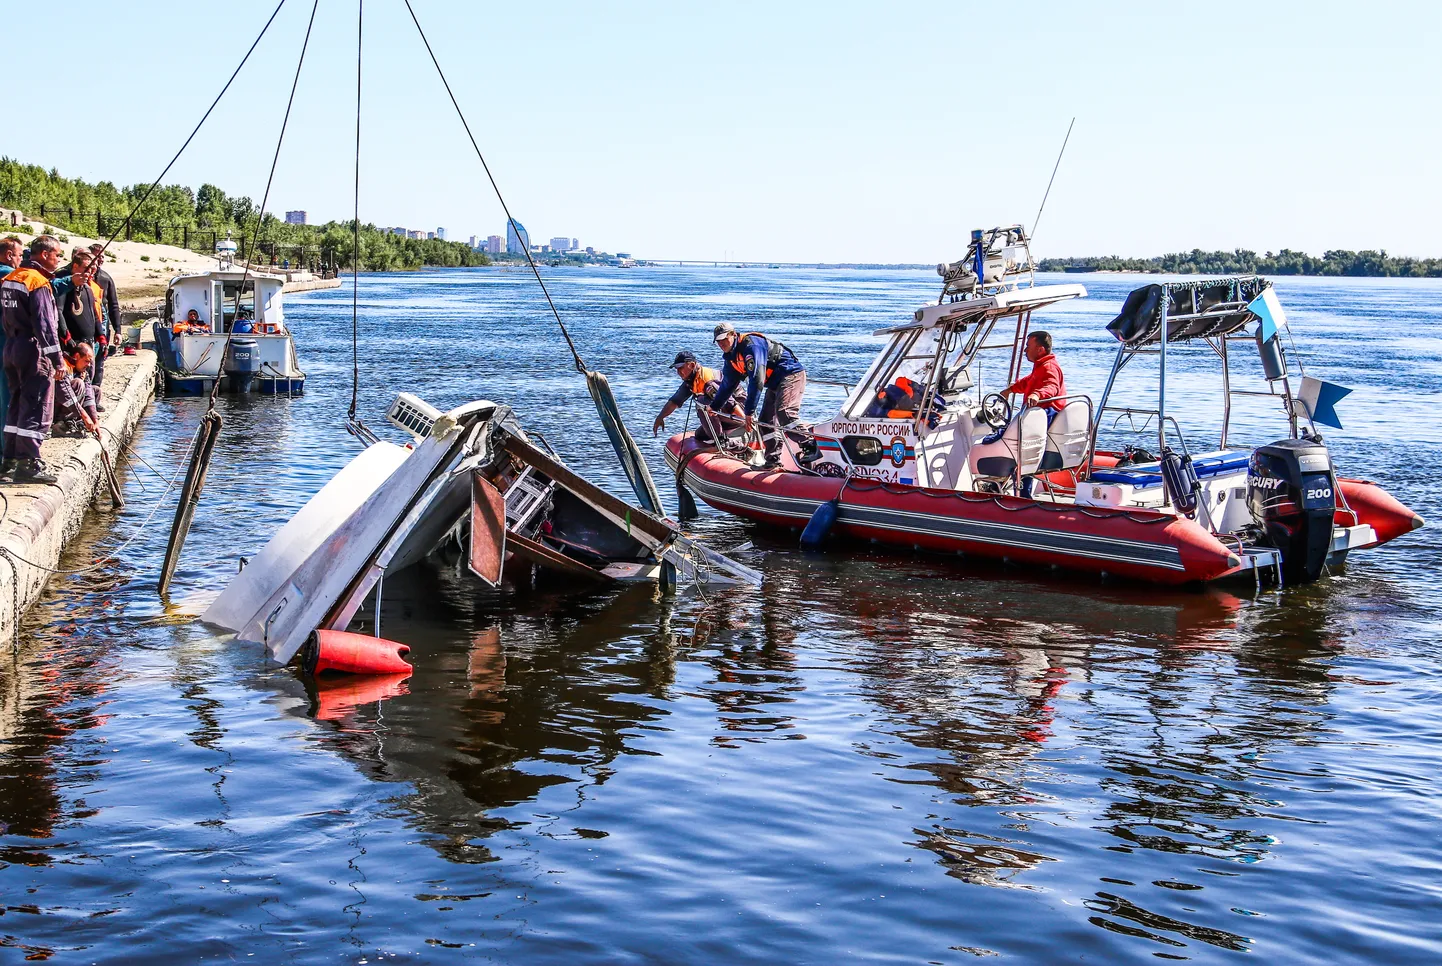 11 июня баржа подмяла под себя катамаран в районе речного порта Волгограда.